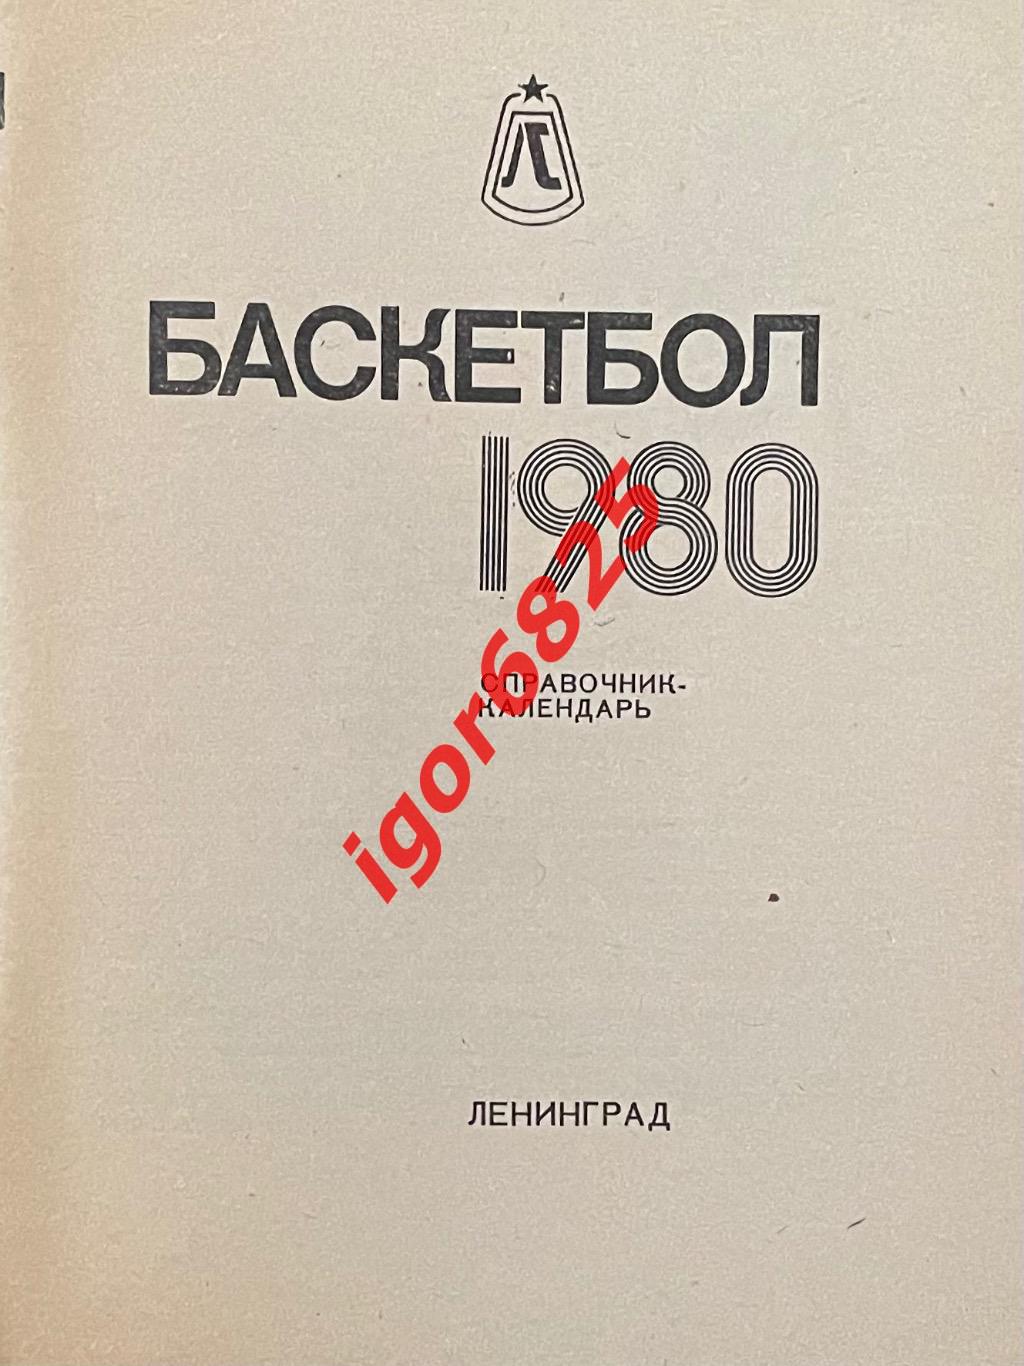 Баскетбол. Календарь-справочник Ленинград 1980. 1